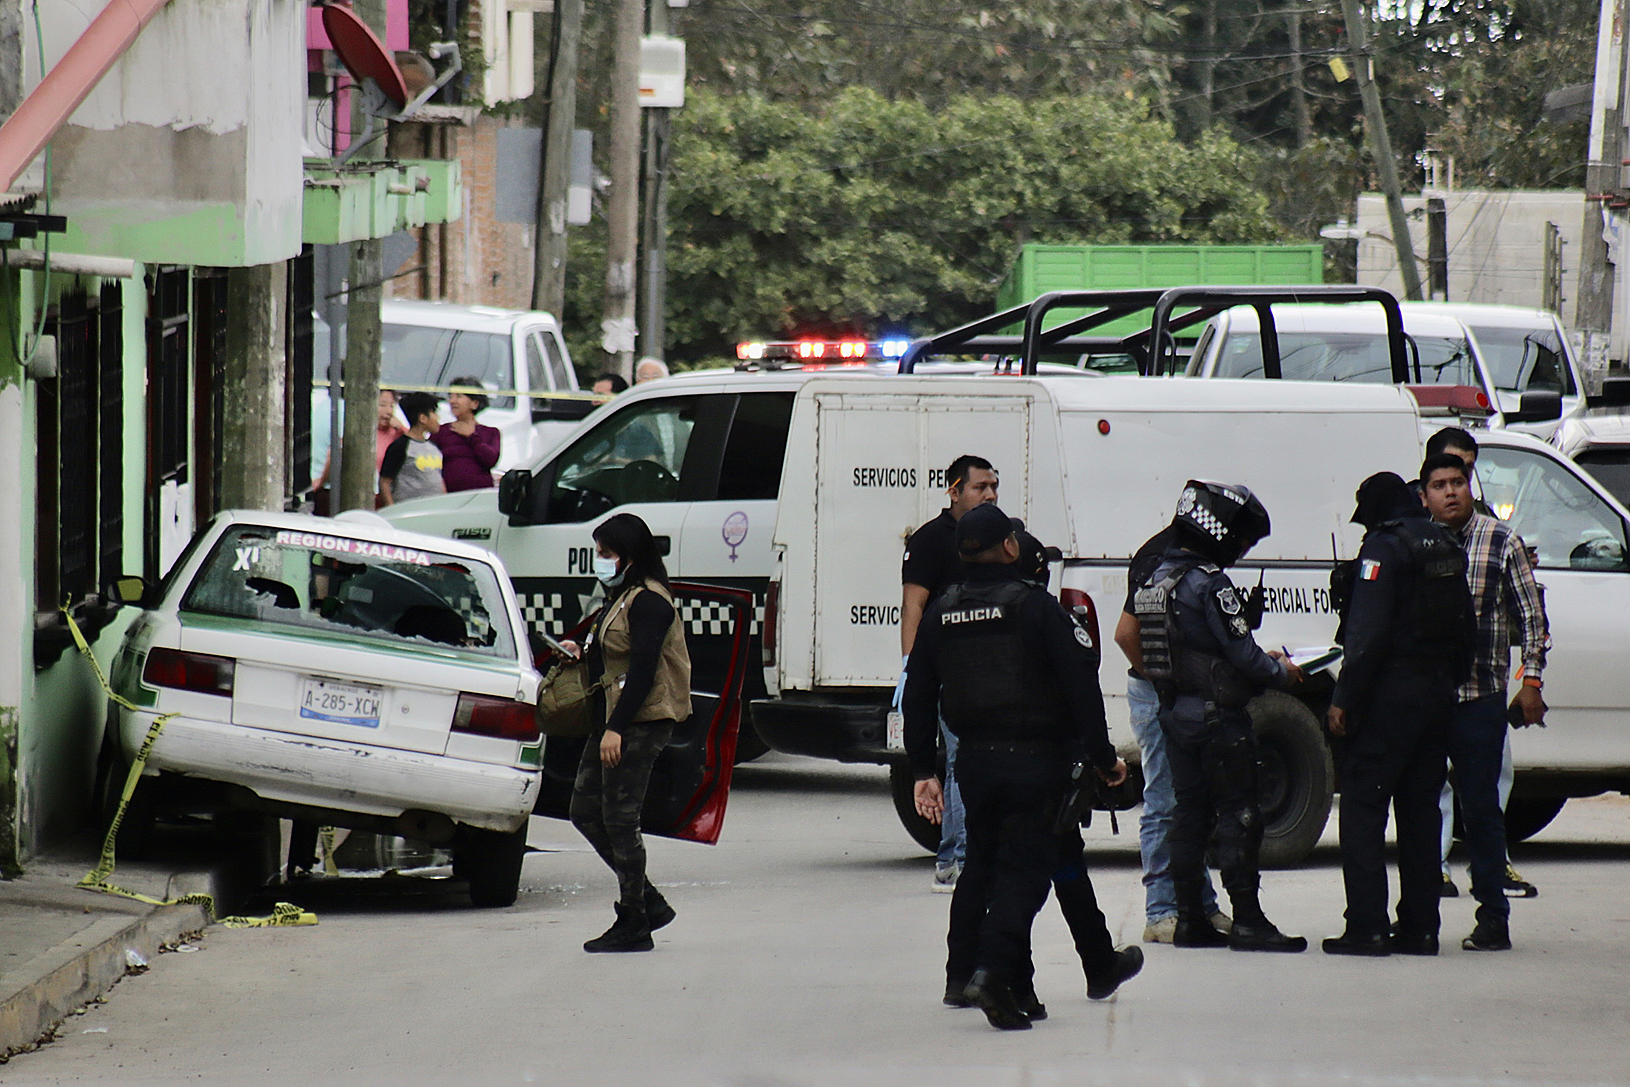 Imagen de referencia. Autoridades inspeccionan un área donde se produjo un crimen en Veracruz, México. (Foto Prensa Libre: EFE)